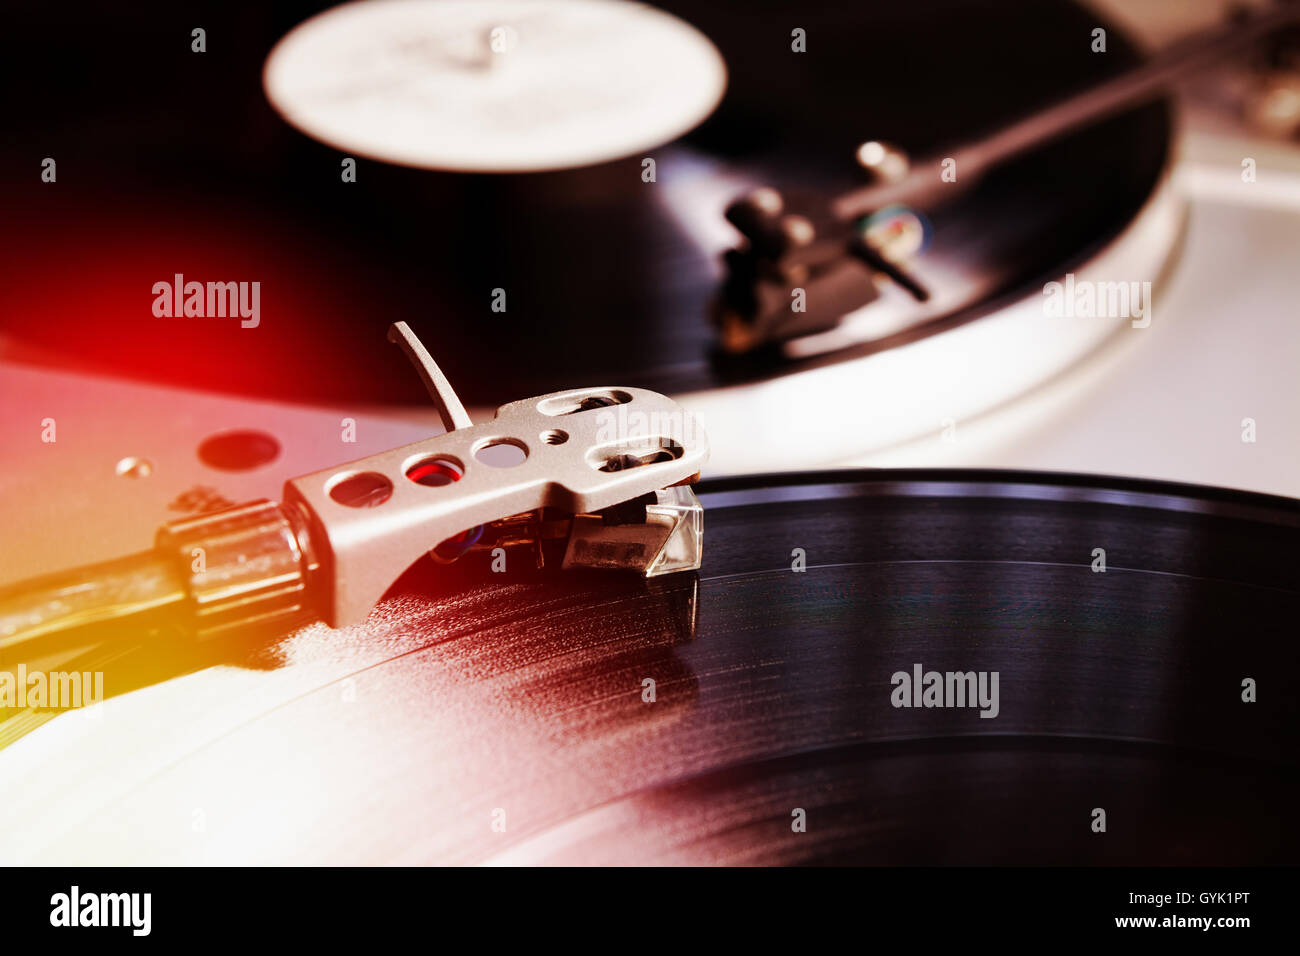 Plattenspieler-Spieler mit musikalischen Vinyl-Schallplatte. Nützlich für DJ, Diskothek und Retro-Thema. Hautnah auf der Nadel. Lichtleck Filmeffekt Stockfoto